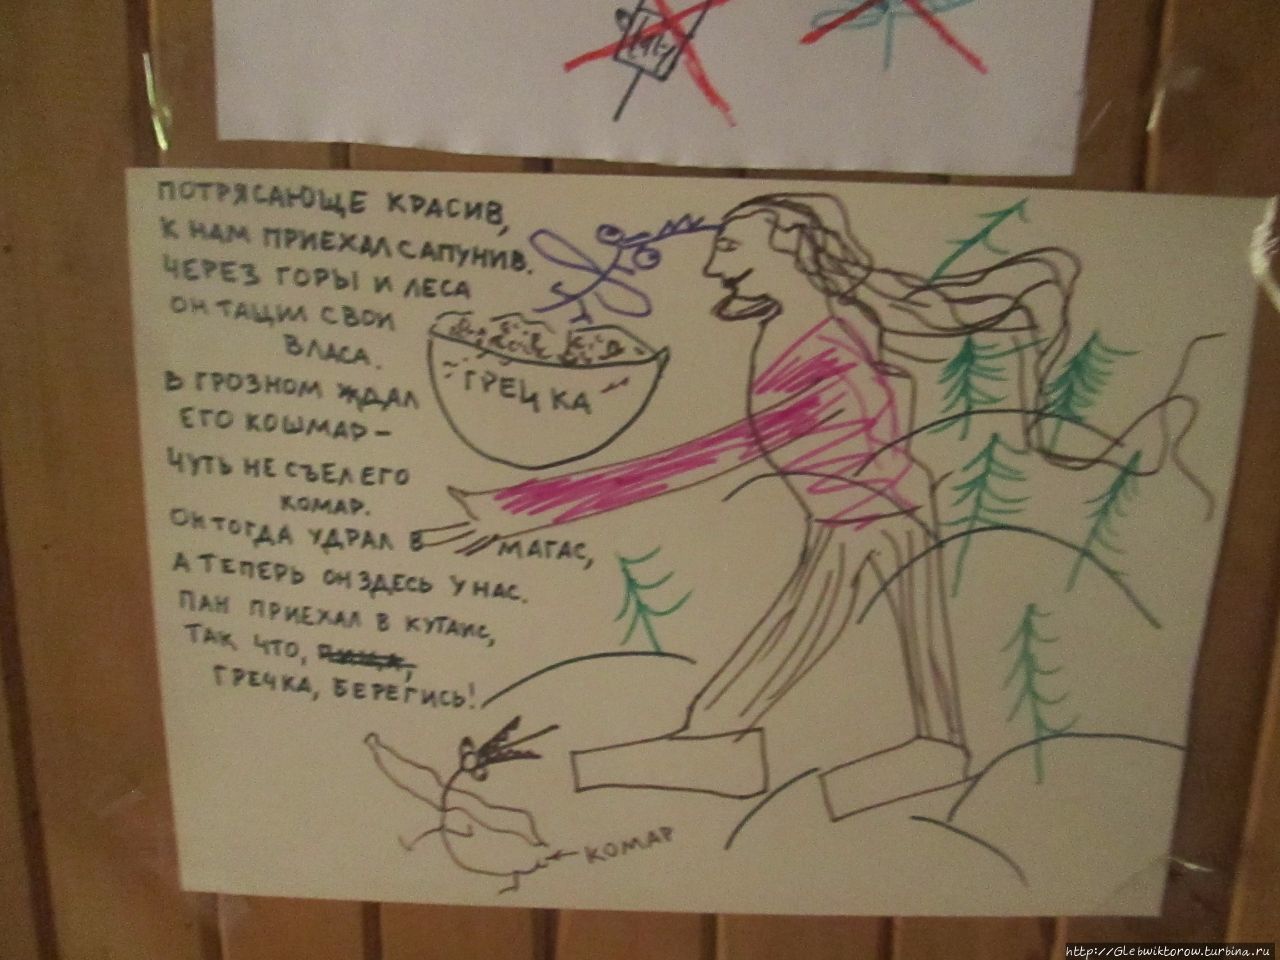 Хата в Кутаиси — бесплатный ночлег со скорпионами по вечерам Кутаиси, Грузия